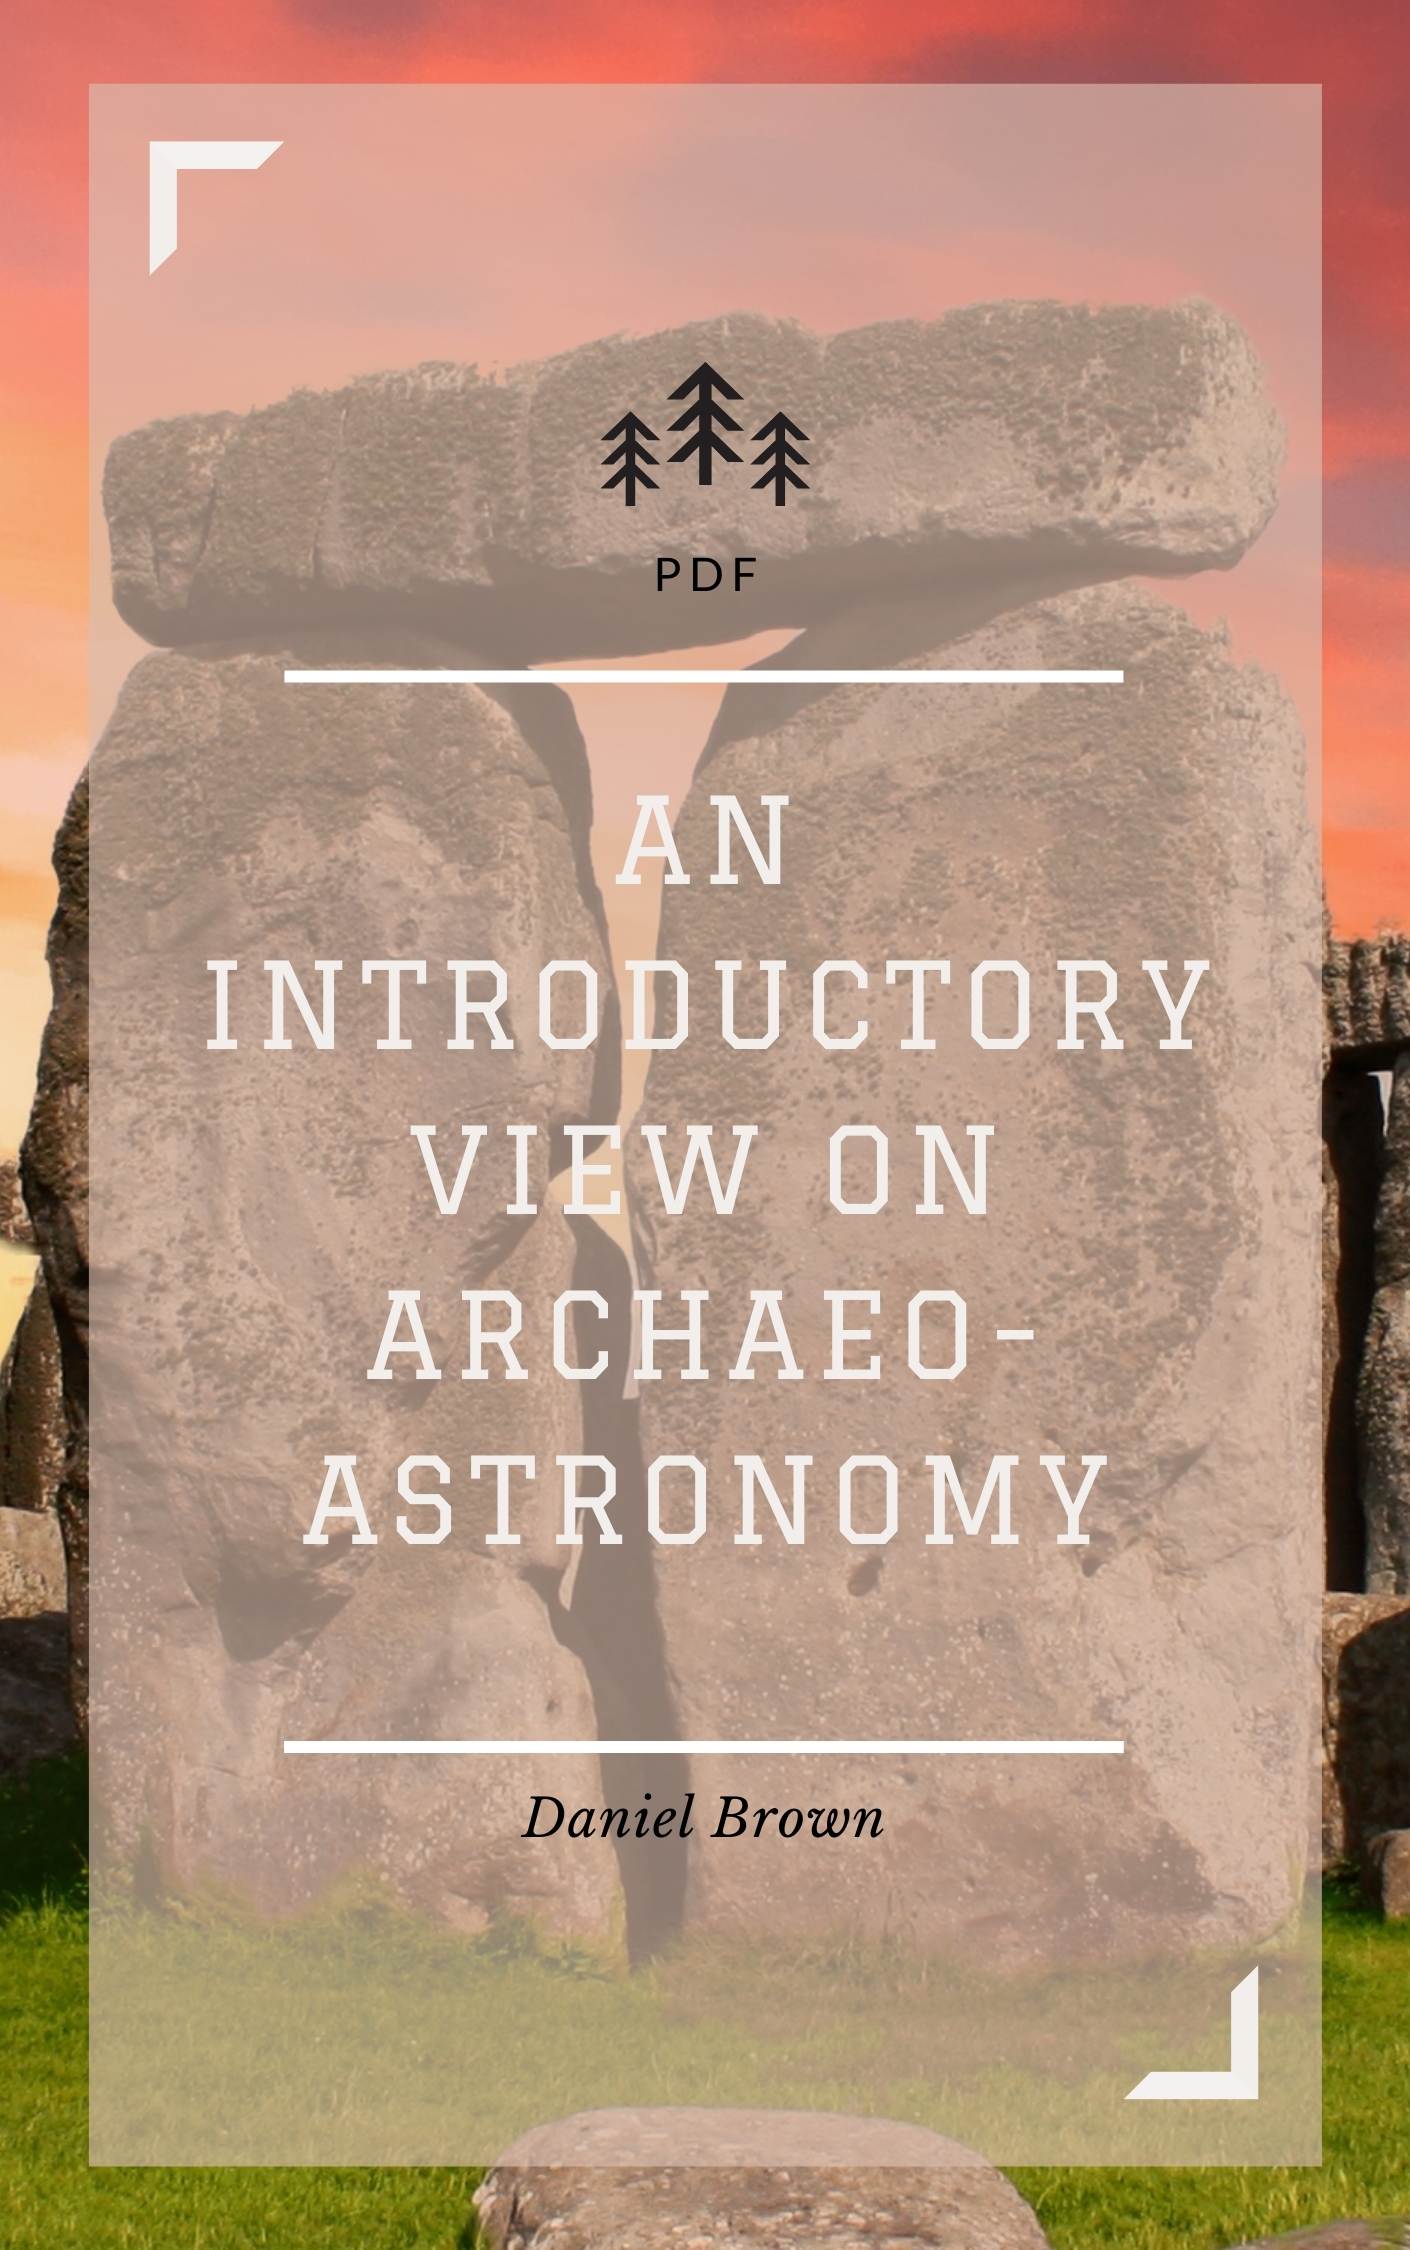 archeoastronomy pdf